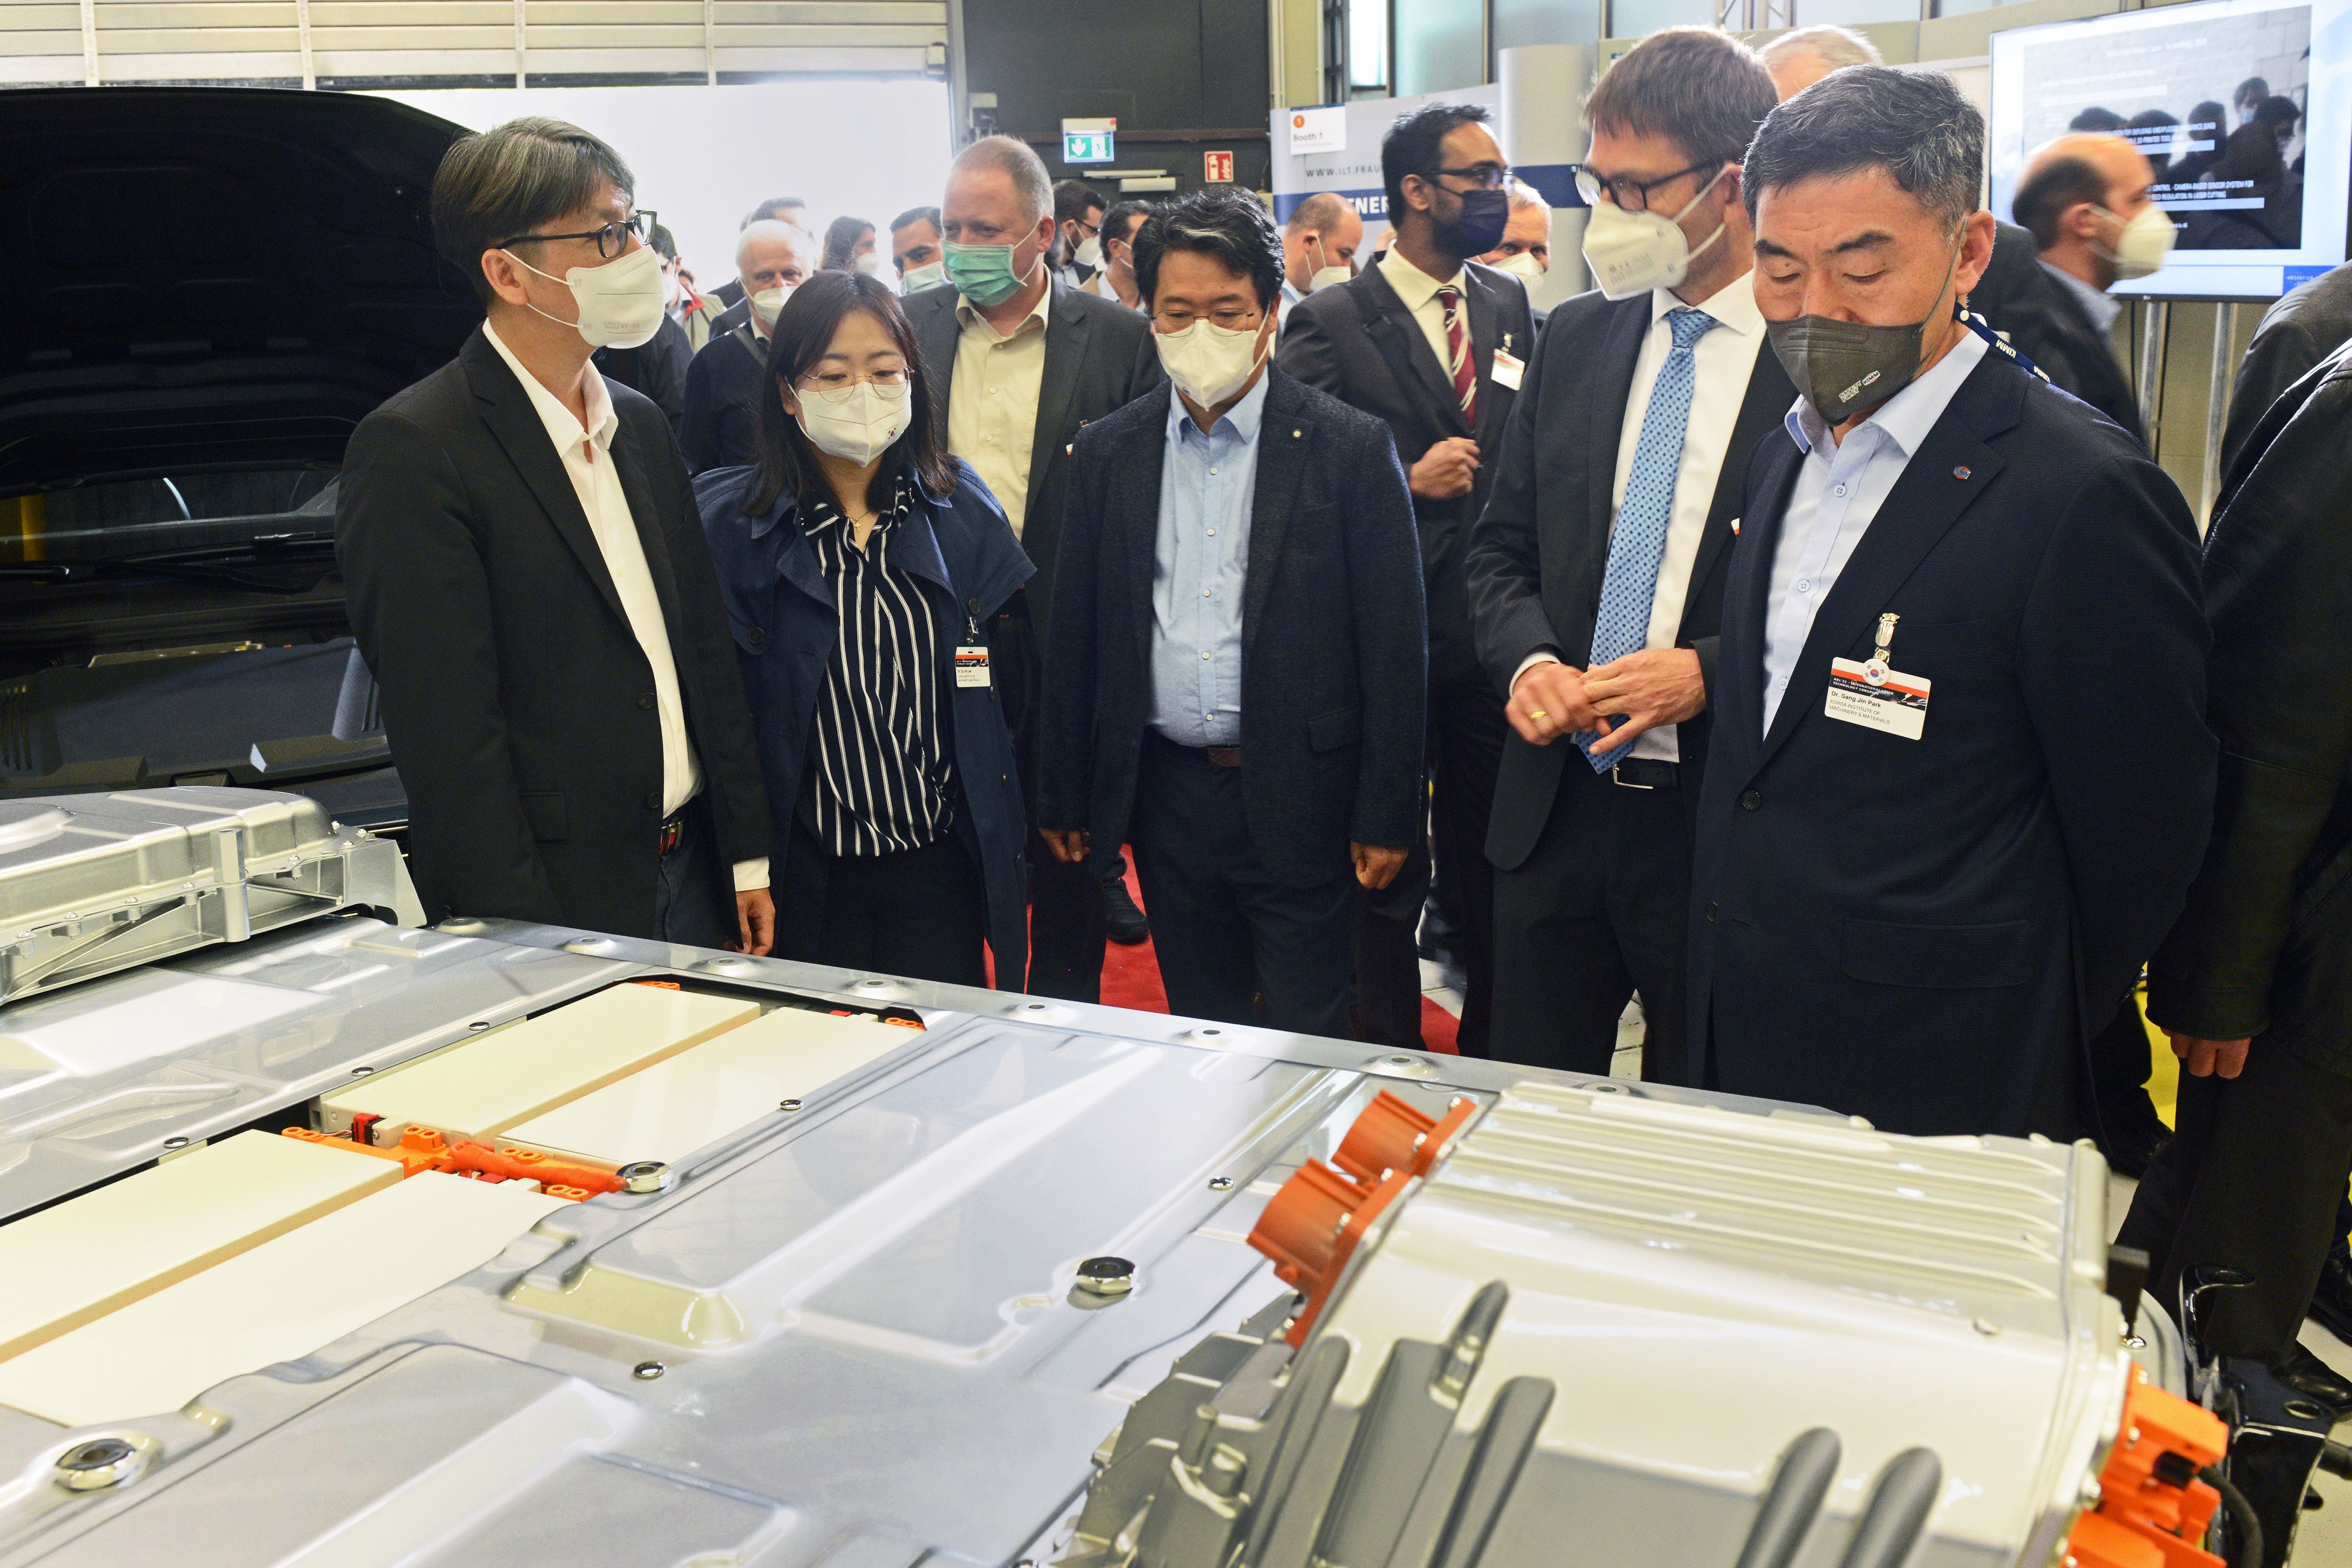 Die koreanische Delegation besichtigte im Rahmen des AKL’22 die Laboratorien des Fraunhofer ILT, Europas größtem Institut für angewandte Lasertechnik. Im Bild: Batteriemodul von AUDI für ein Elektrofahrzeug.